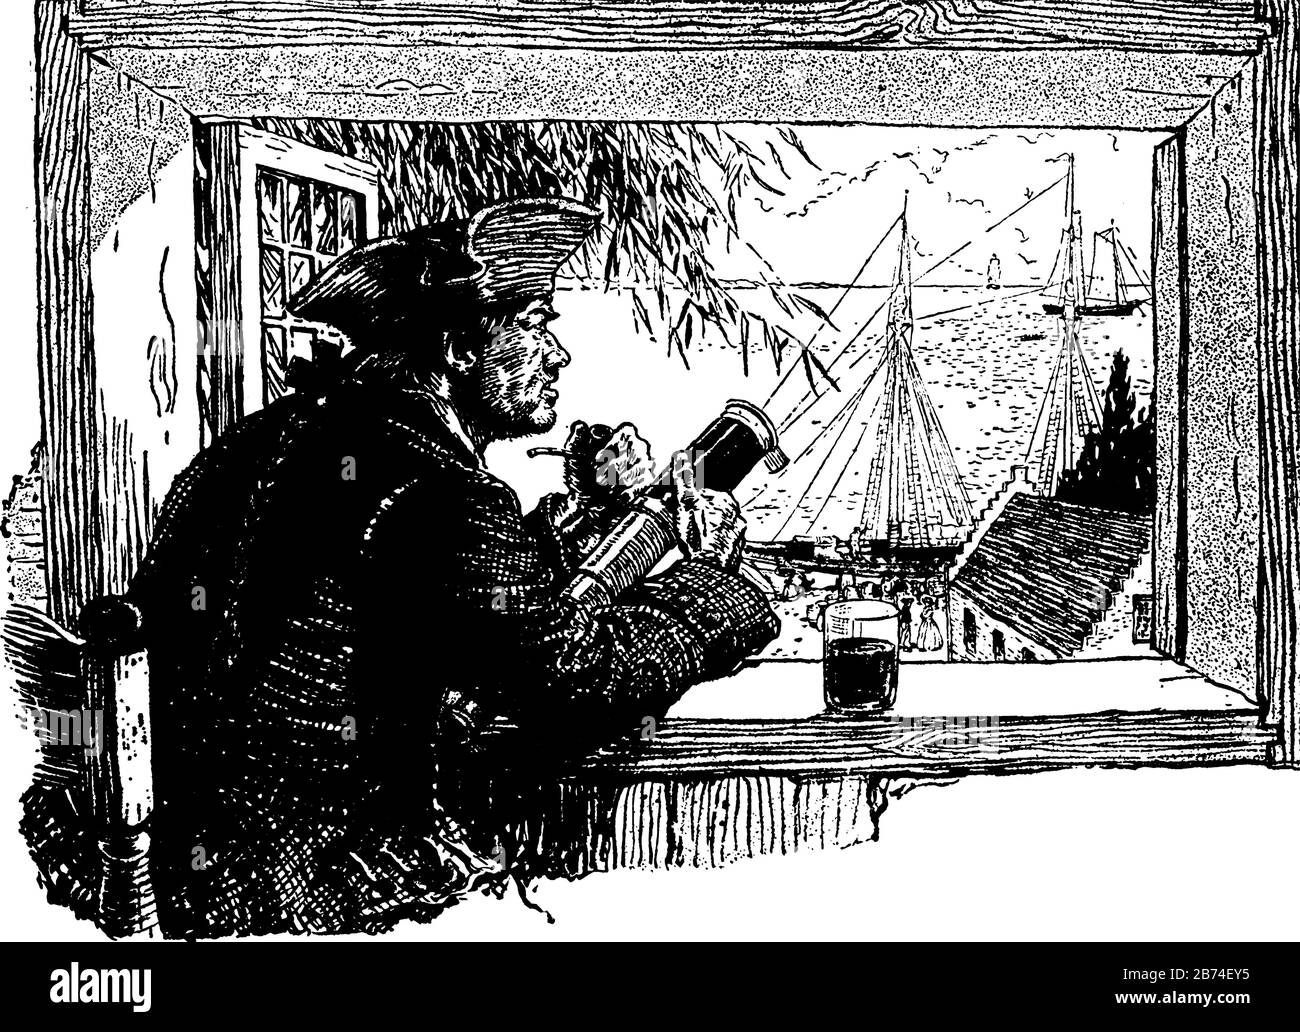 Un uomo che guarda attraverso la finestra le navi in mare e fumare, tiene in mano la Spyglass e il vetro tenuto alla finestra, linea d'epoca disegno o incisione Illustrazione Vettoriale